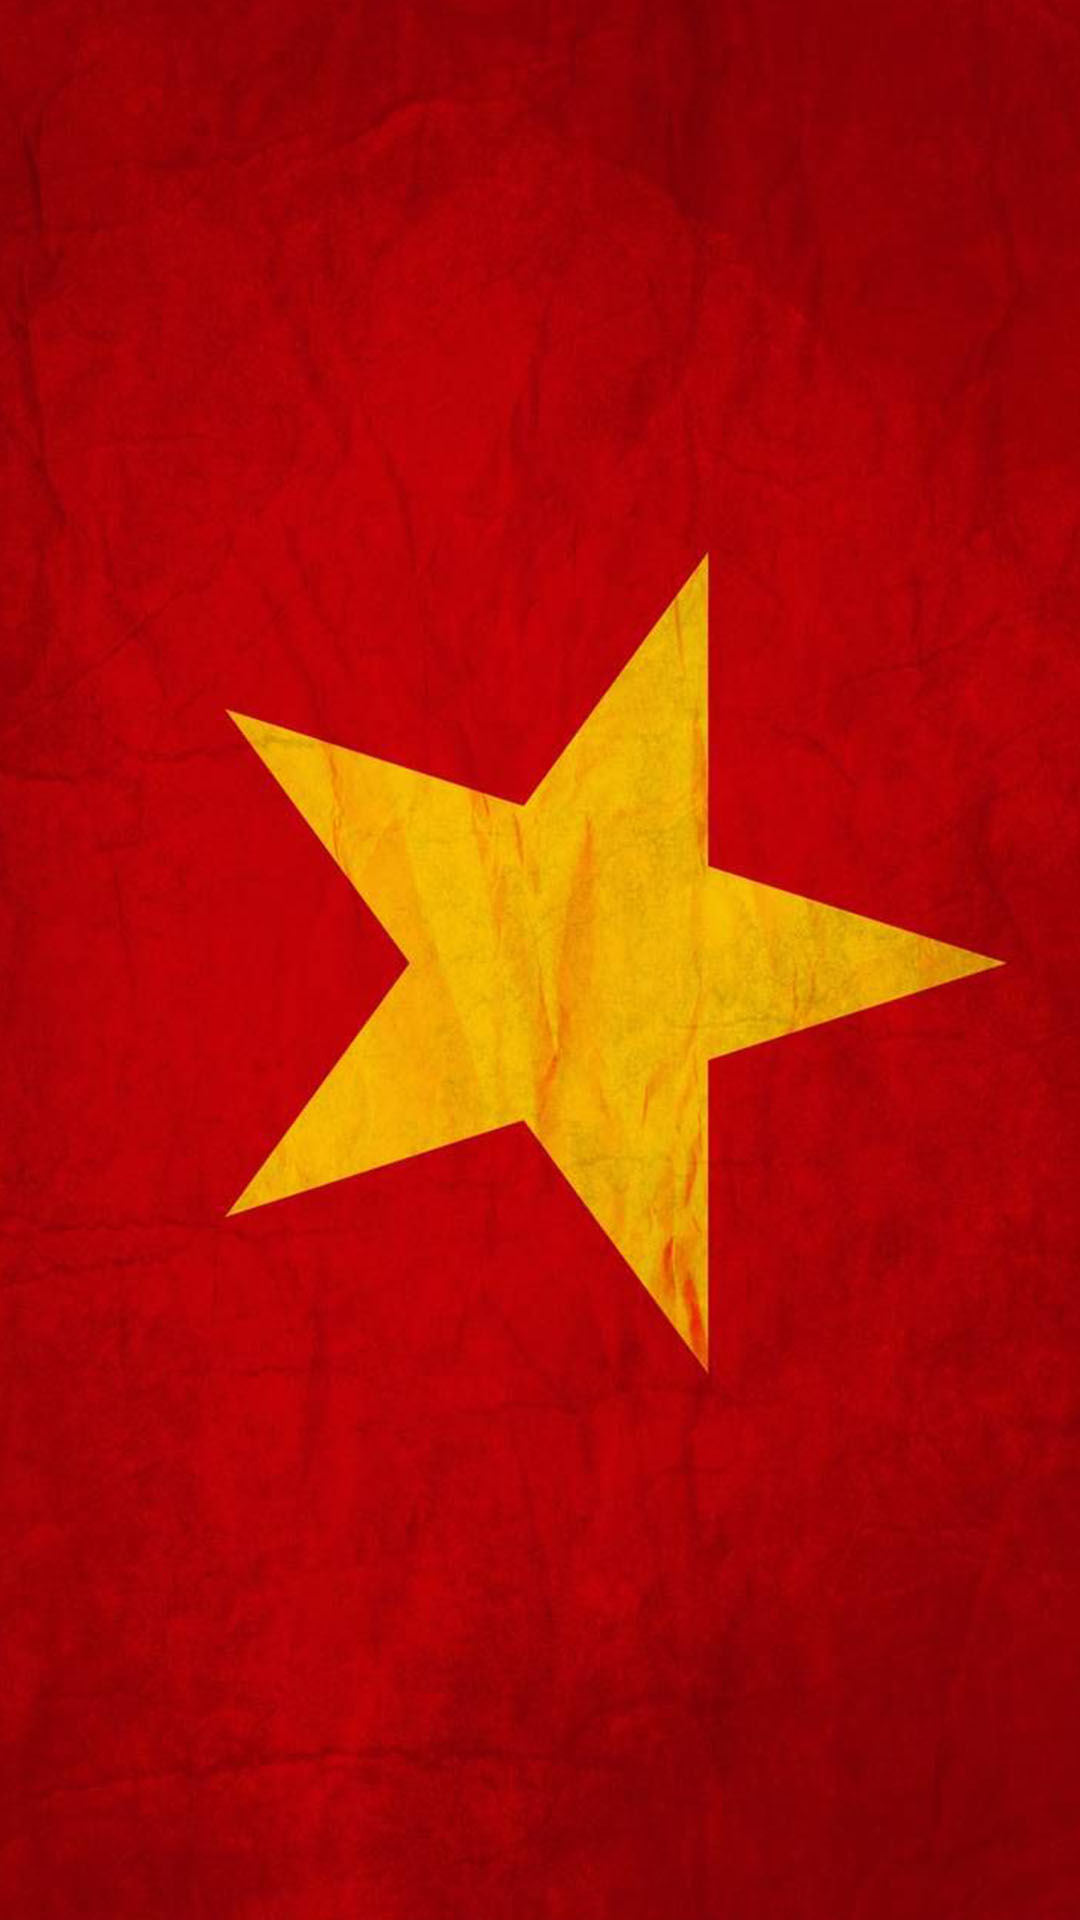 Cùng sử dụng những Hình nền cờ Việt Nam cho điện thoại mang đến cho bạn một không gian đầy màu sắc và nghị lực. Bộ sưu tập với nhiều kiểu thiết kế đa dạng, phù hợp với nhiều loại màn hình khác nhau. Bạn sẽ có phong cách thật riêng biệt khi trang trí cho chiếc smartphone yêu quý của mình.